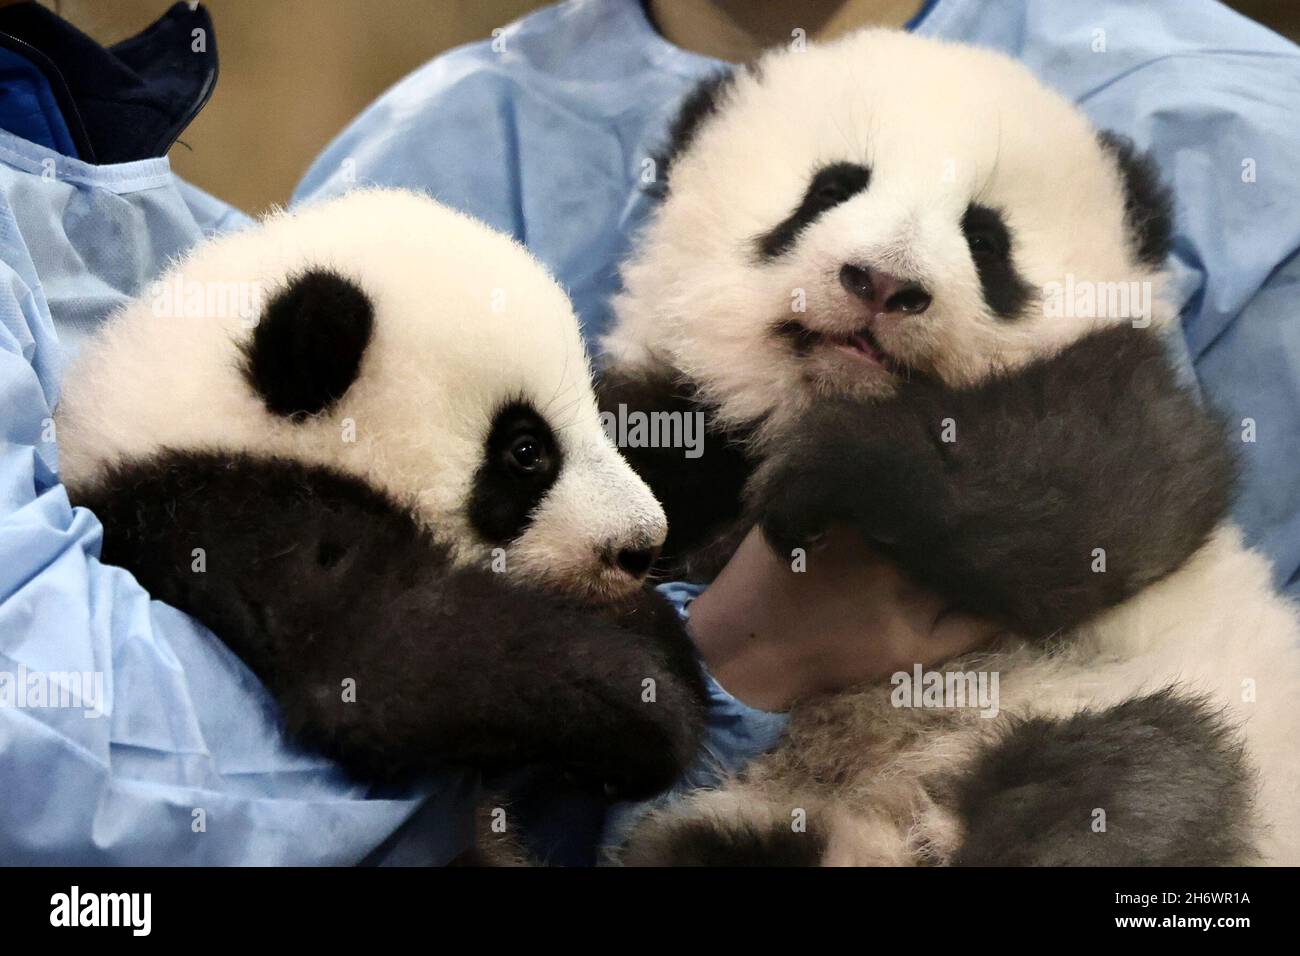 Los cuidadores de animales posan con pandas recién nacidos de bebés gemelos antes de una ceremonia de nombramiento en el zoológico de Beauval, en Saint-Aignan-sur-Cher, Francia, 18 de noviembre de 2021. REUTERS/Sarah Meyssonnier Foto de stock